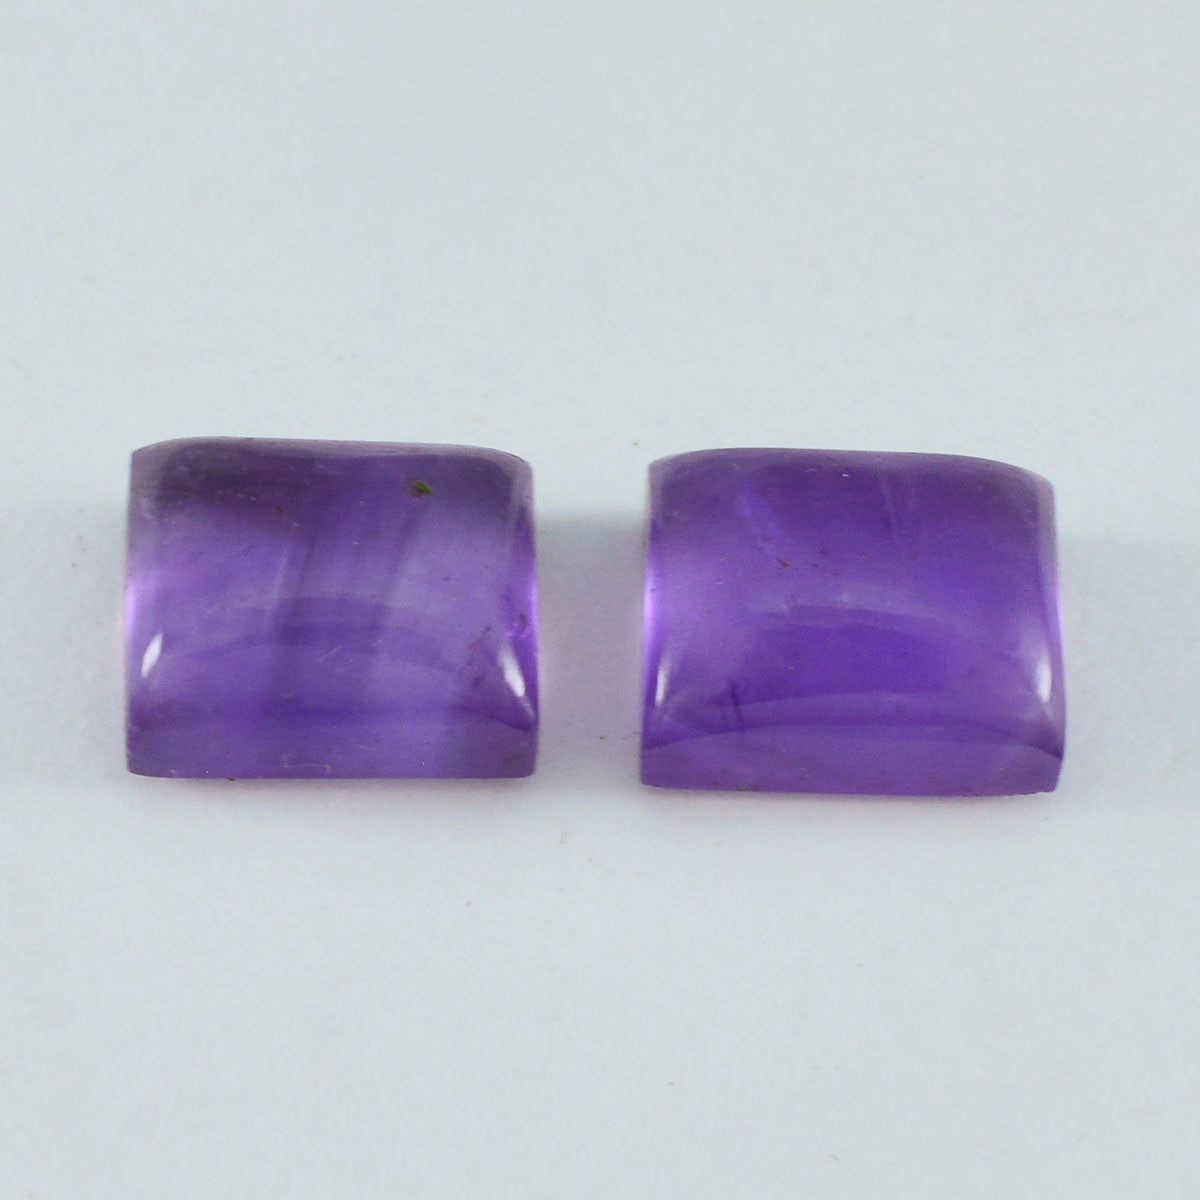 riyogems 1 шт. фиолетовый аметист кабошон 10x12 мм восьмиугольной формы прекрасного качества, свободные драгоценные камни